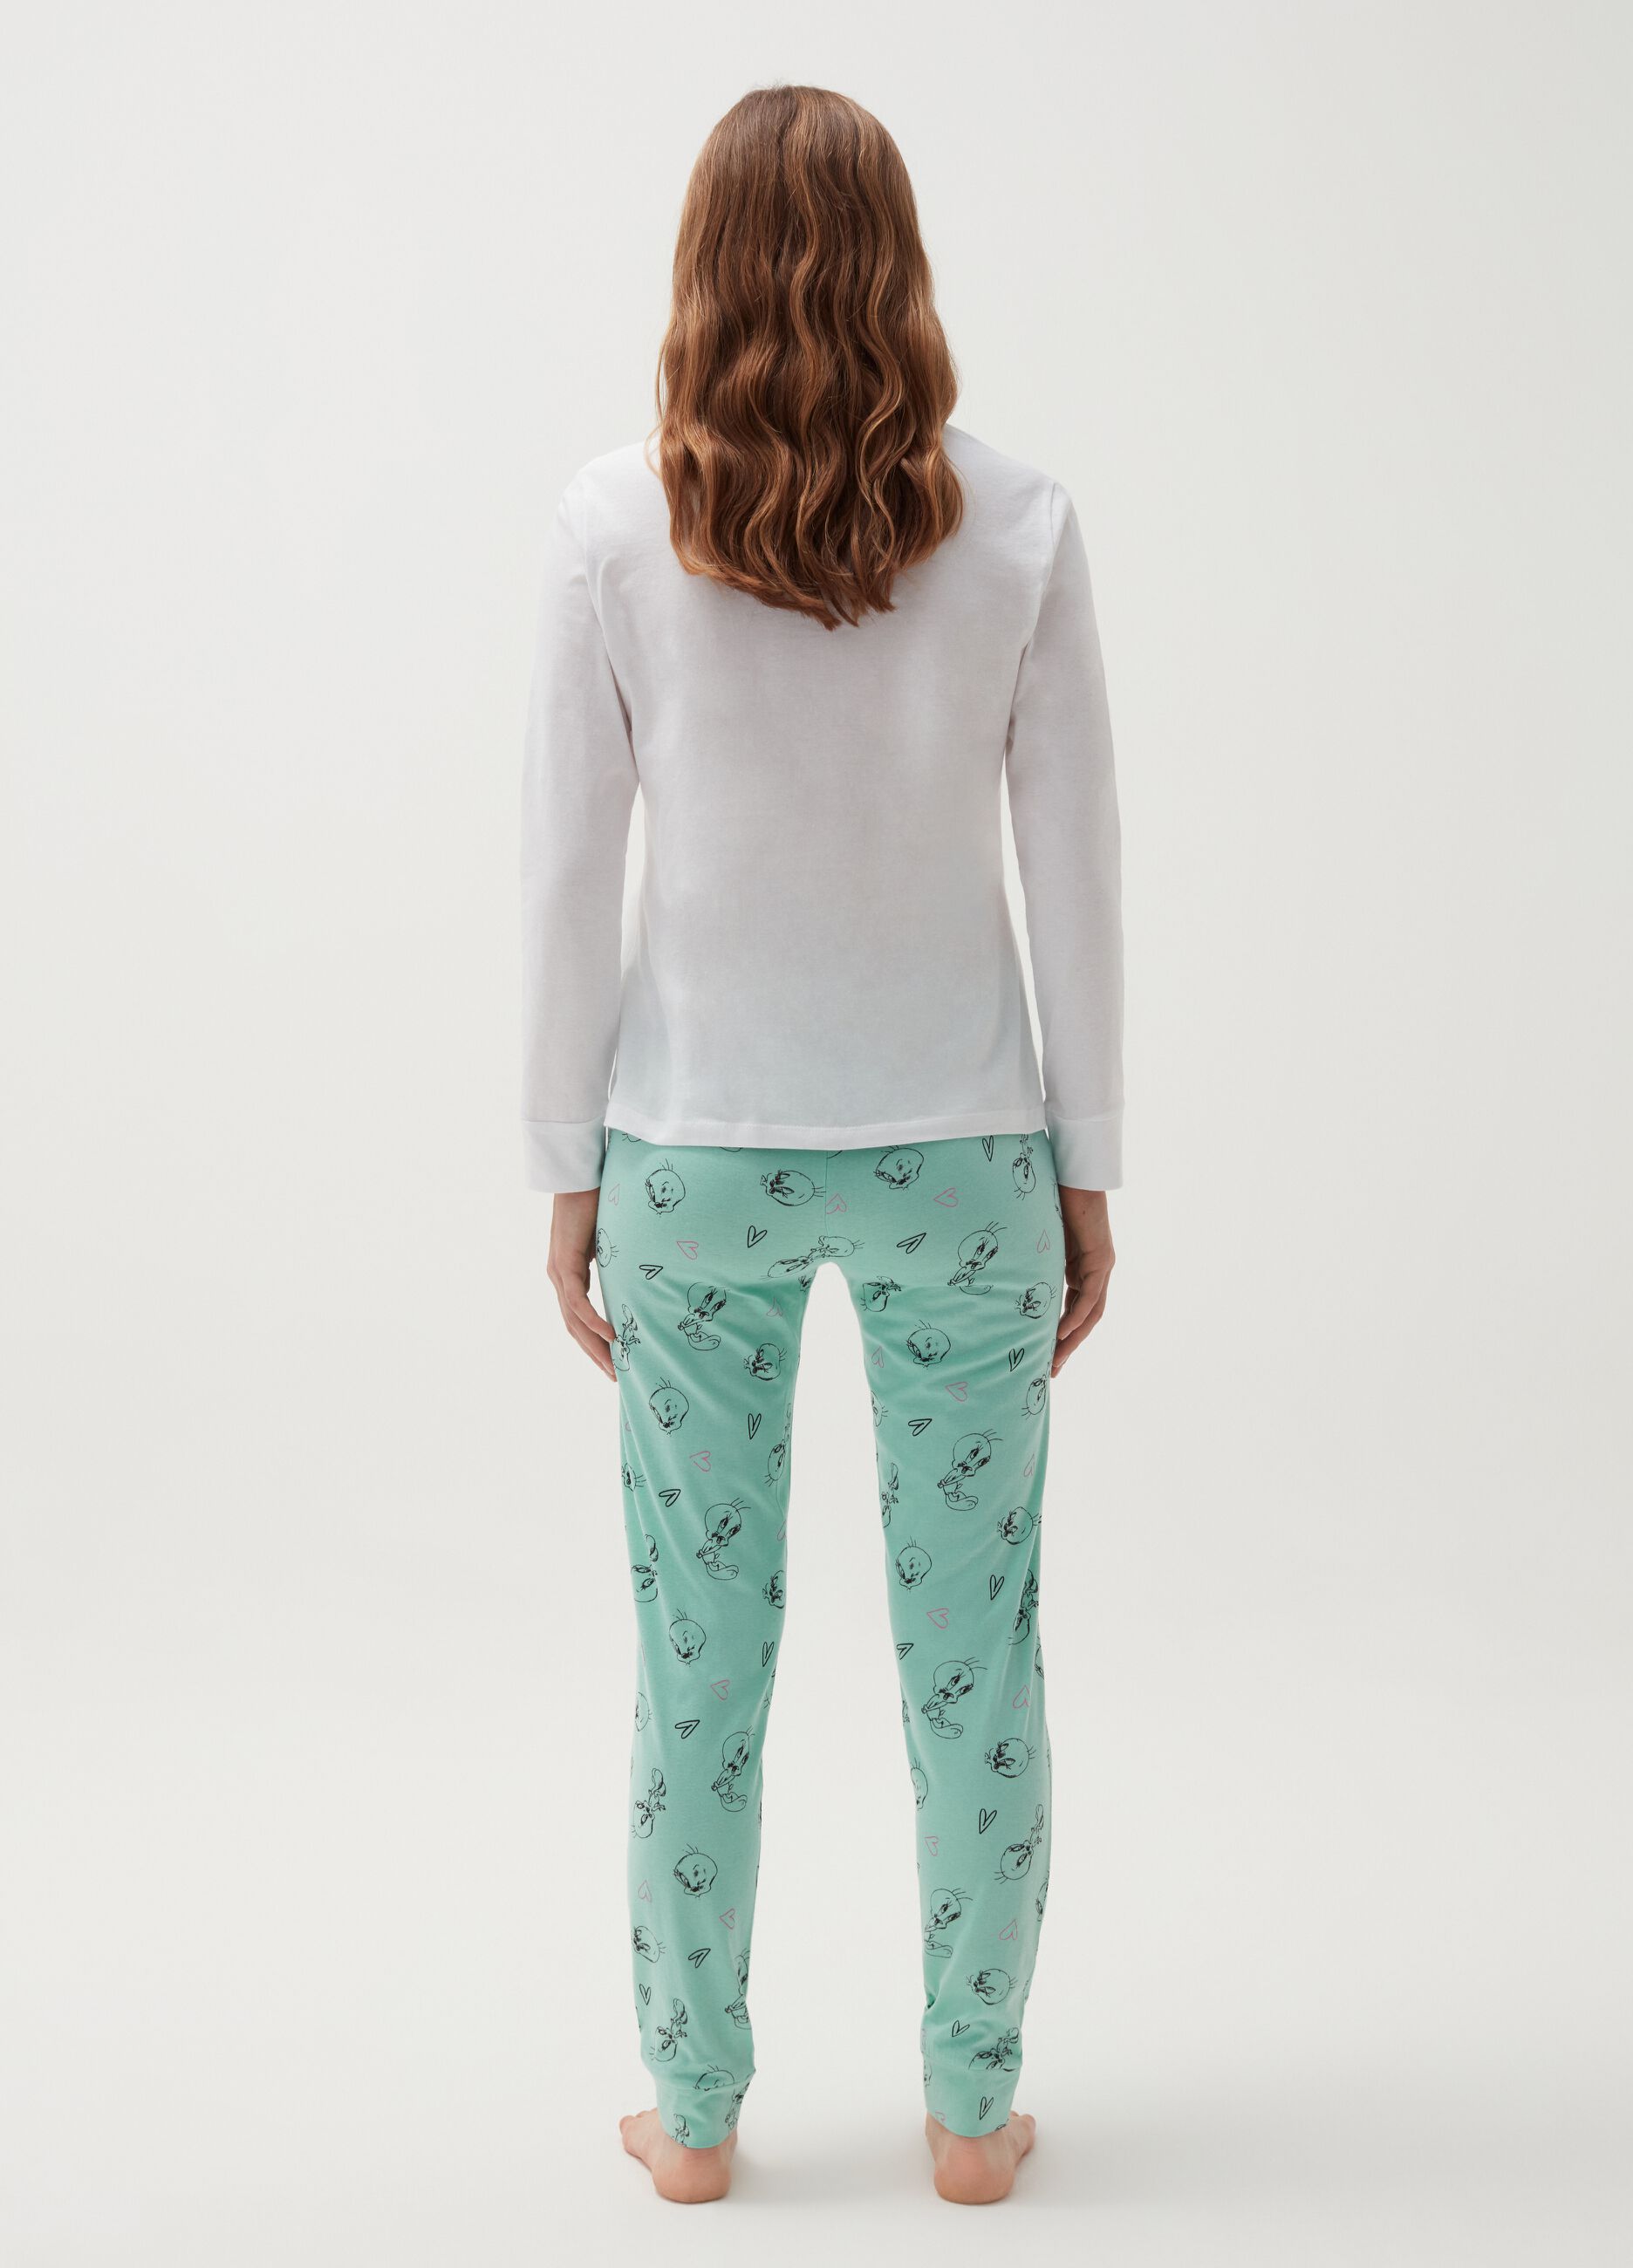 Long cotton pyjamas with Tweetie Pie pattern